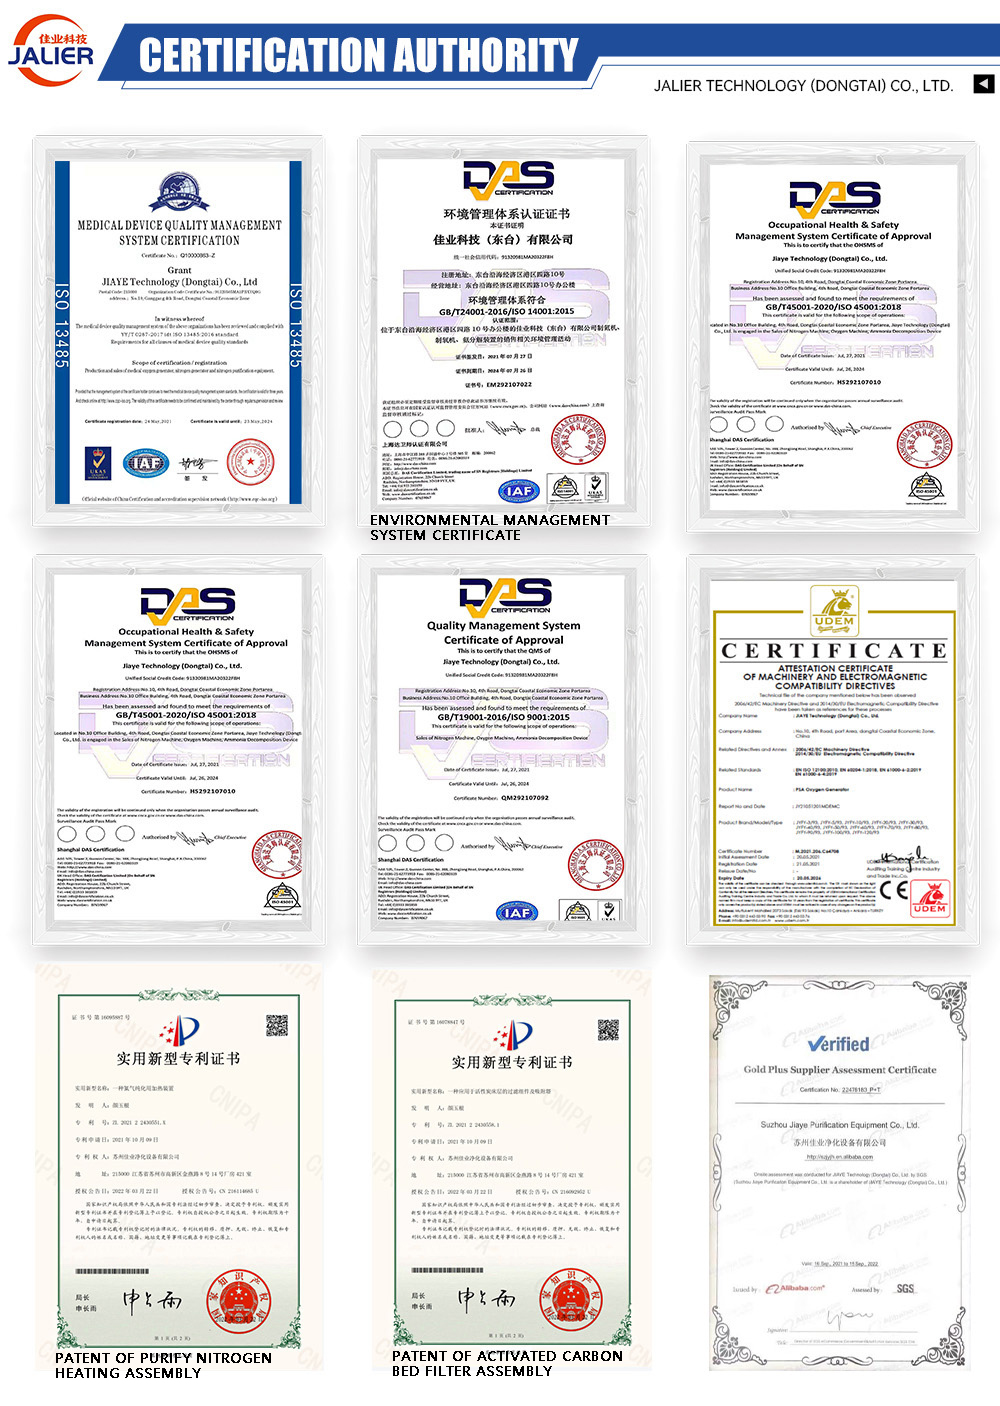 Certificaciones